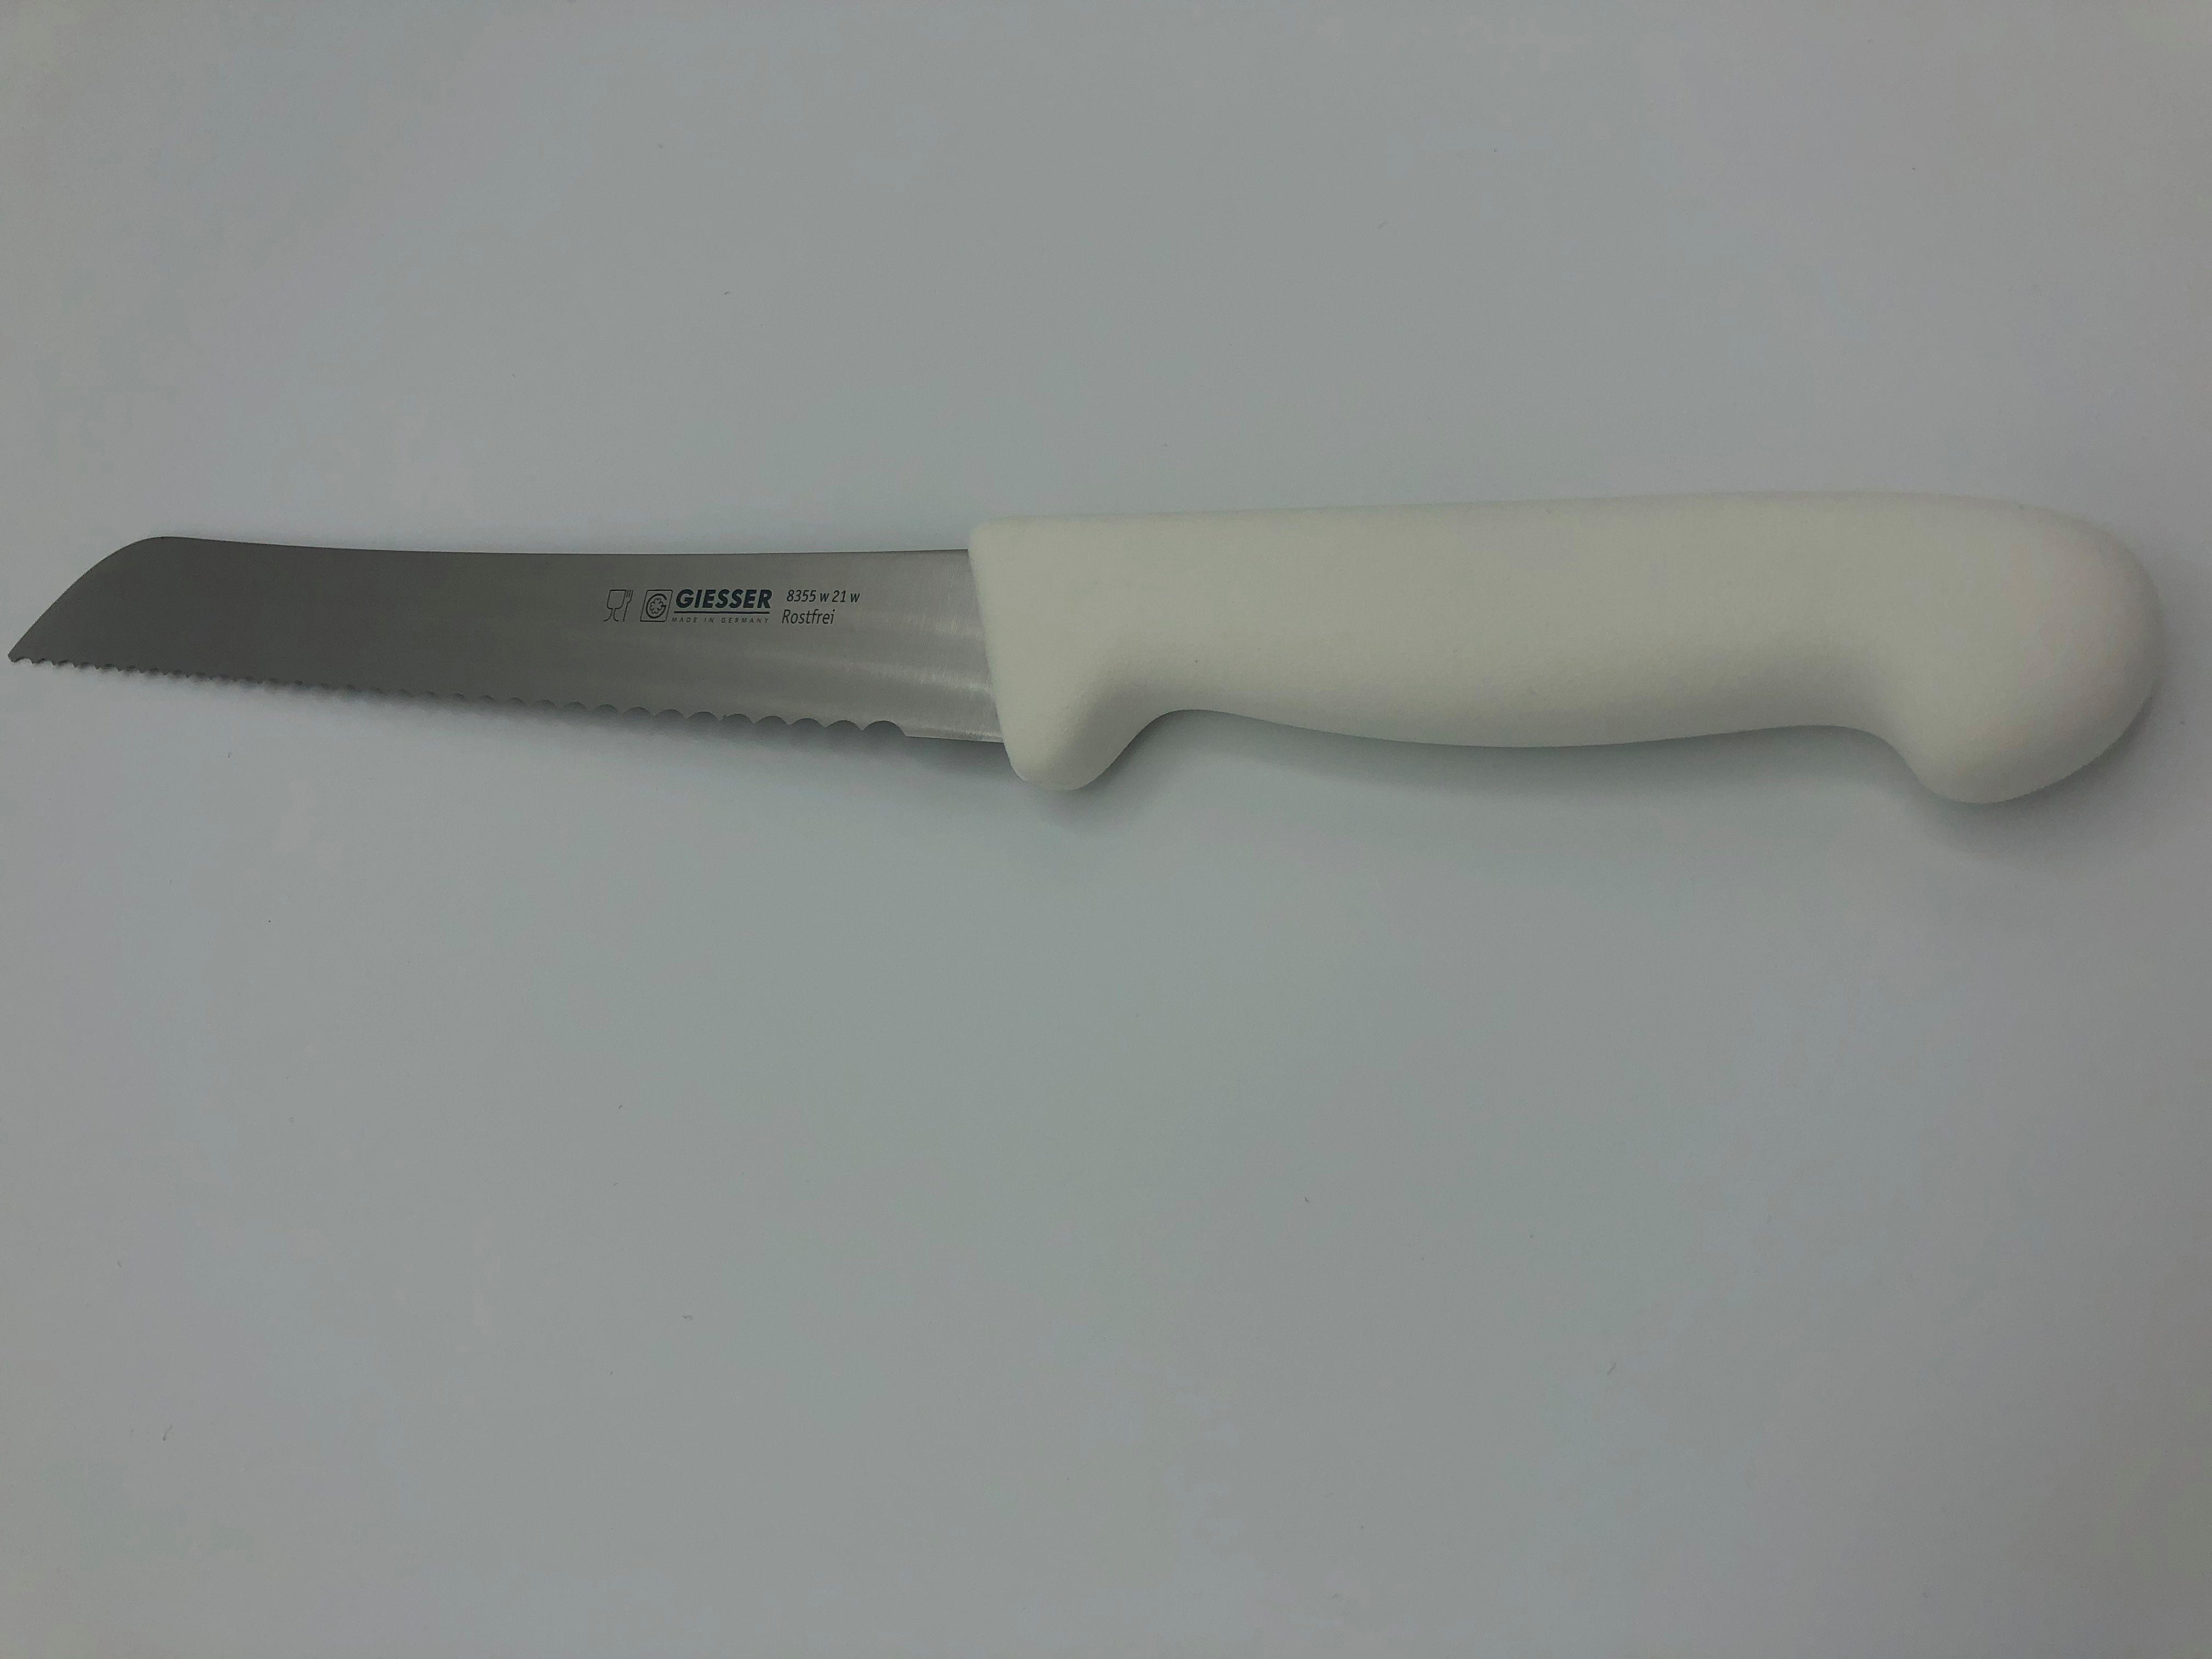 schneiden ideal Giesser Messer 8355, Weiß Brotmesser mm 6 zum Konditormesser Brot Welle, Kunststoffgriff,